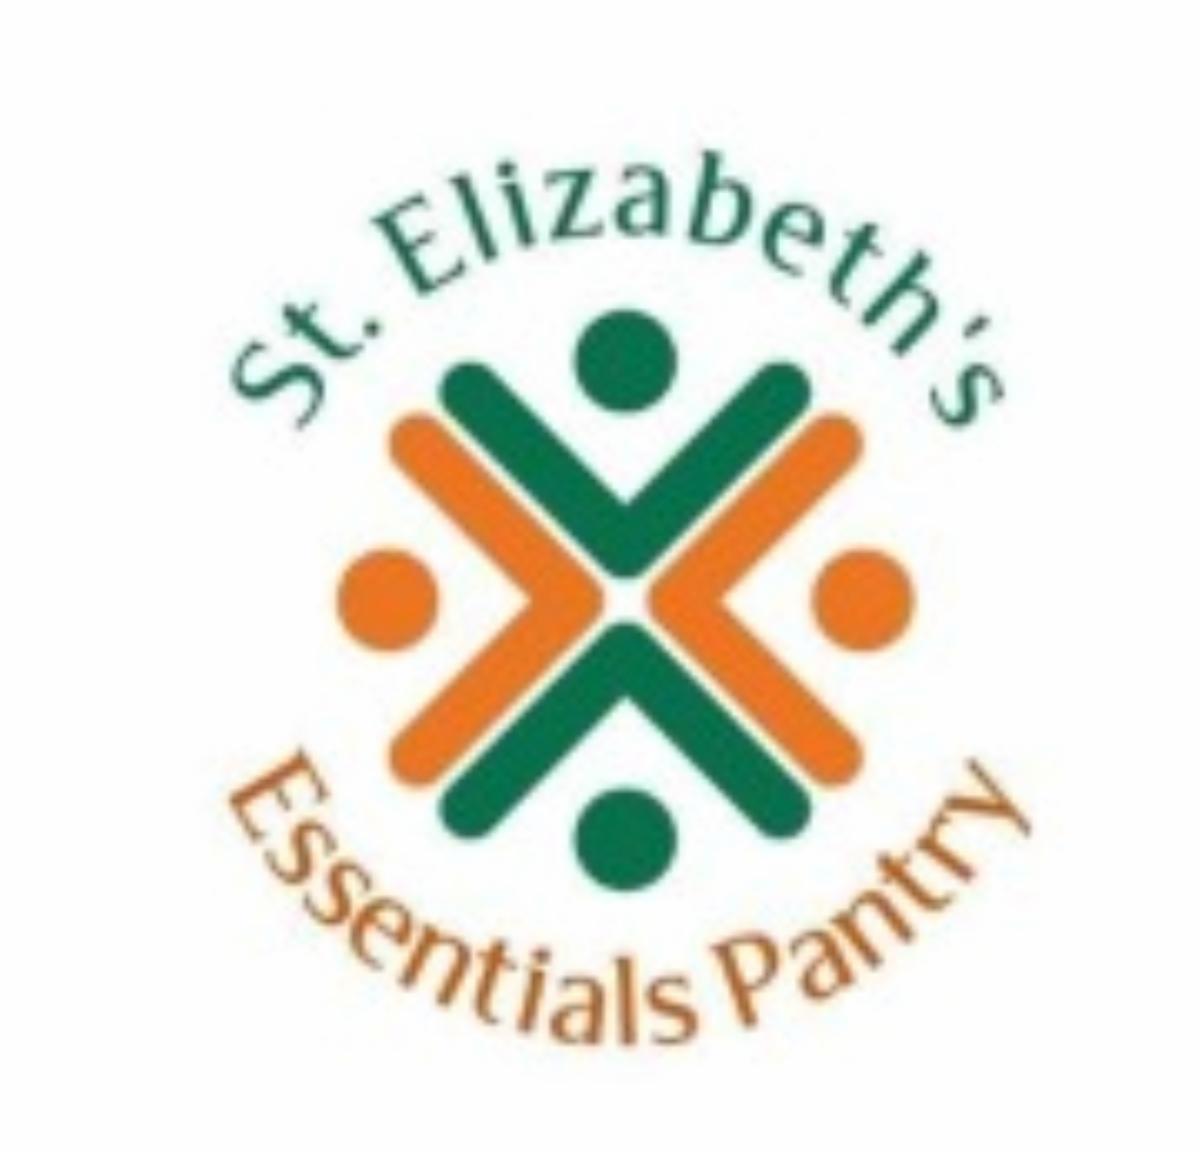 St E_s Logo resized